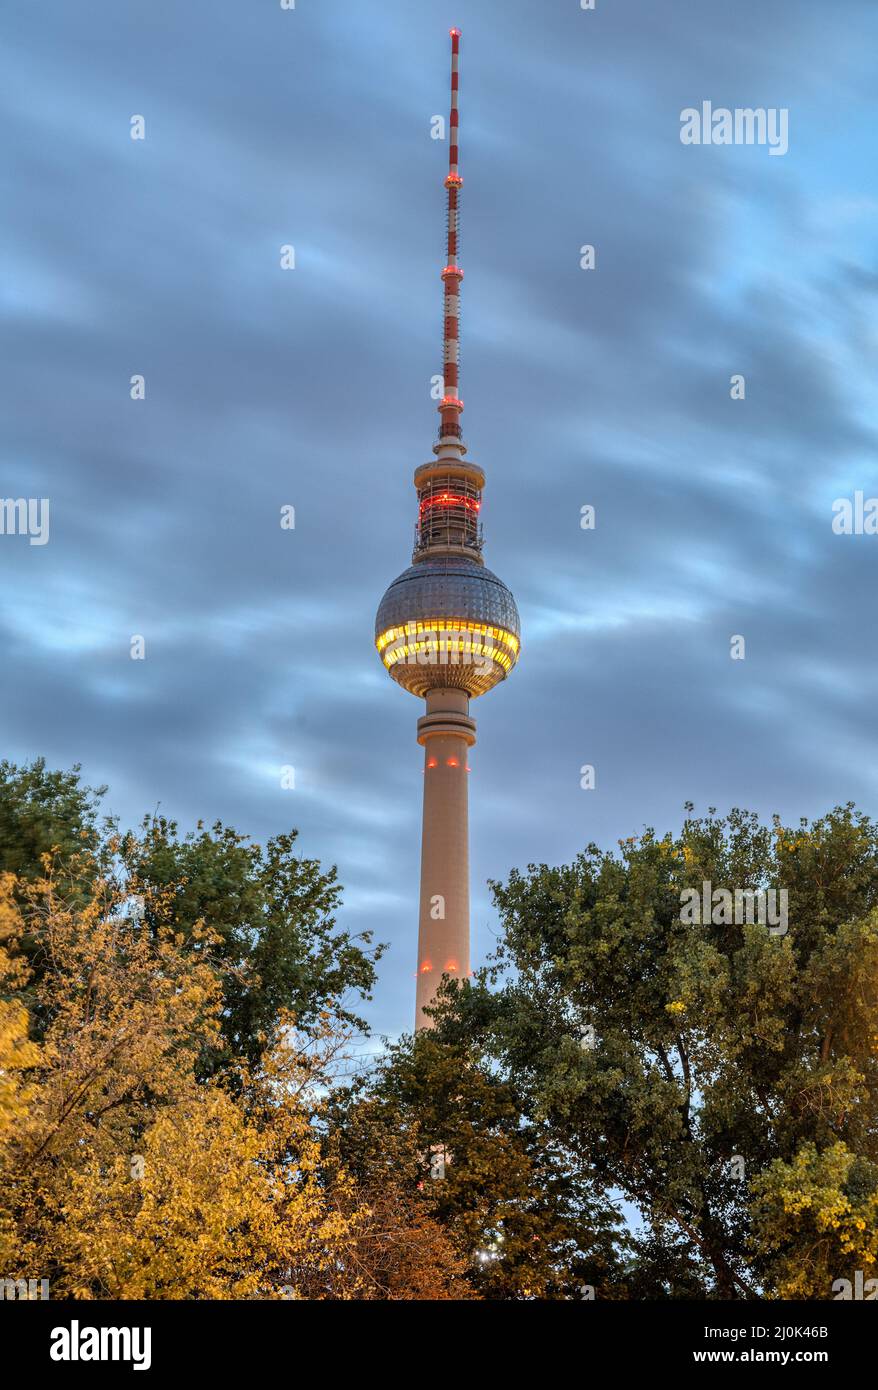 La famosa torre de televisión de Berlín al amanecer vista a través de algunos árboles Foto de stock